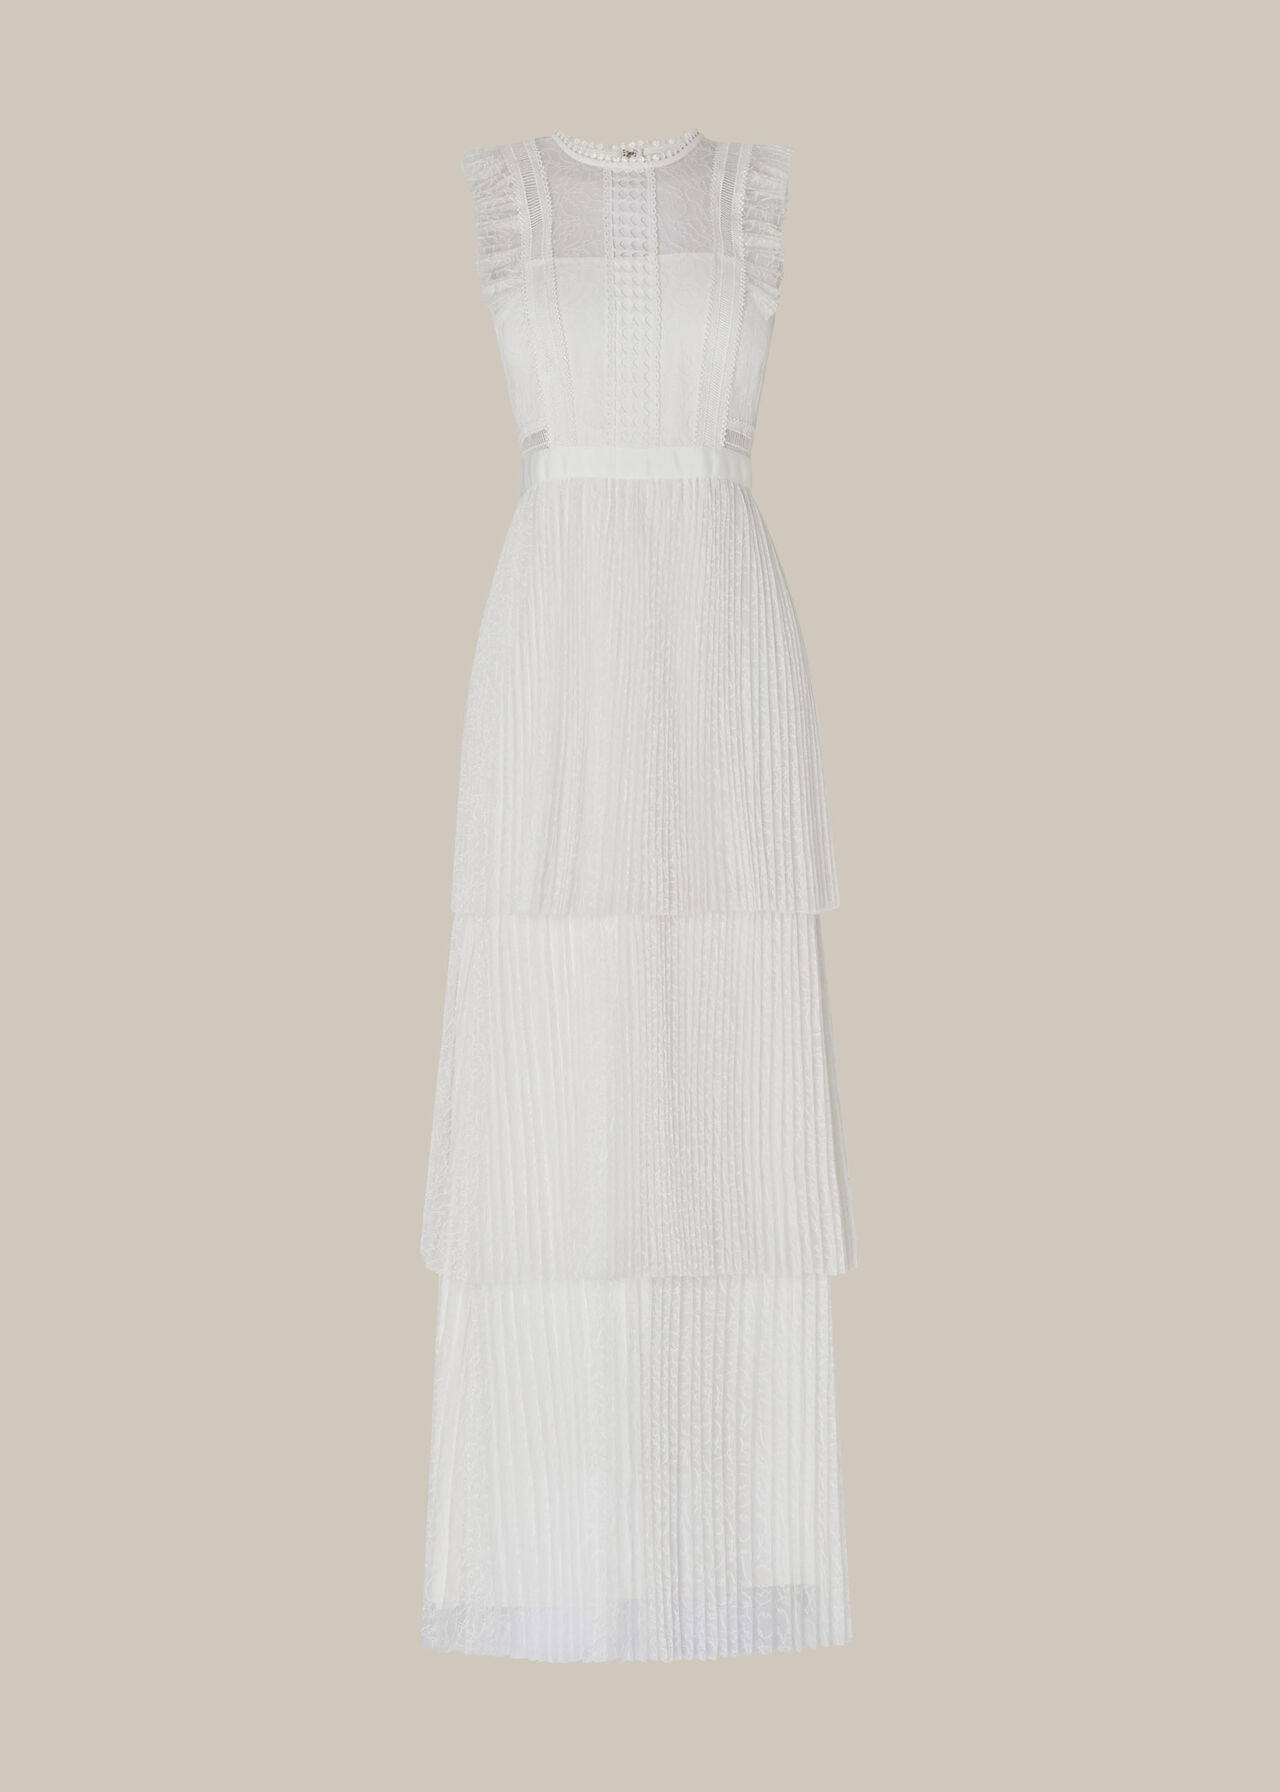 Theodora Wedding Dress Ivory